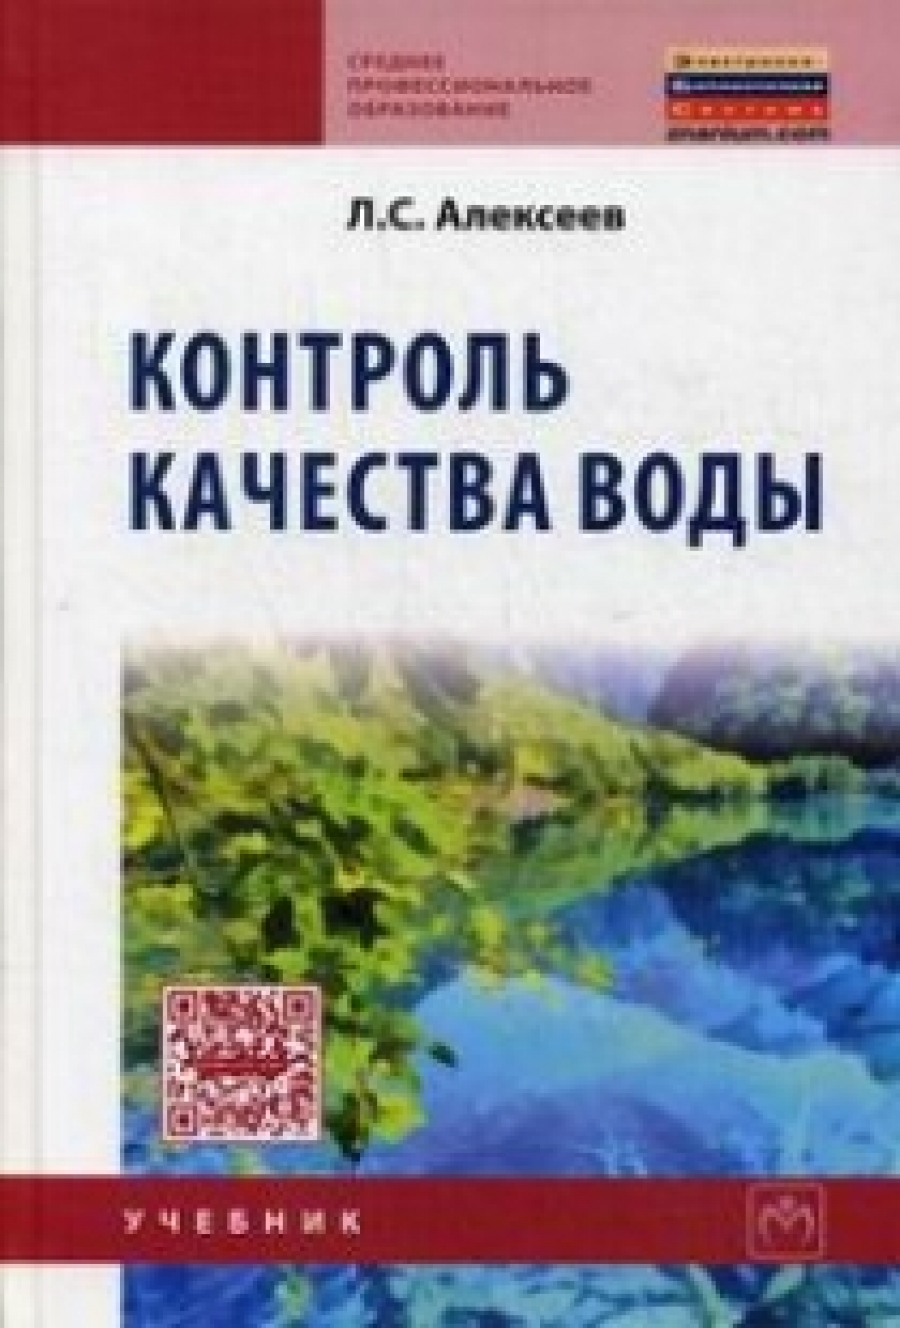 Алексеев Л.С. - Контроль качества воды 